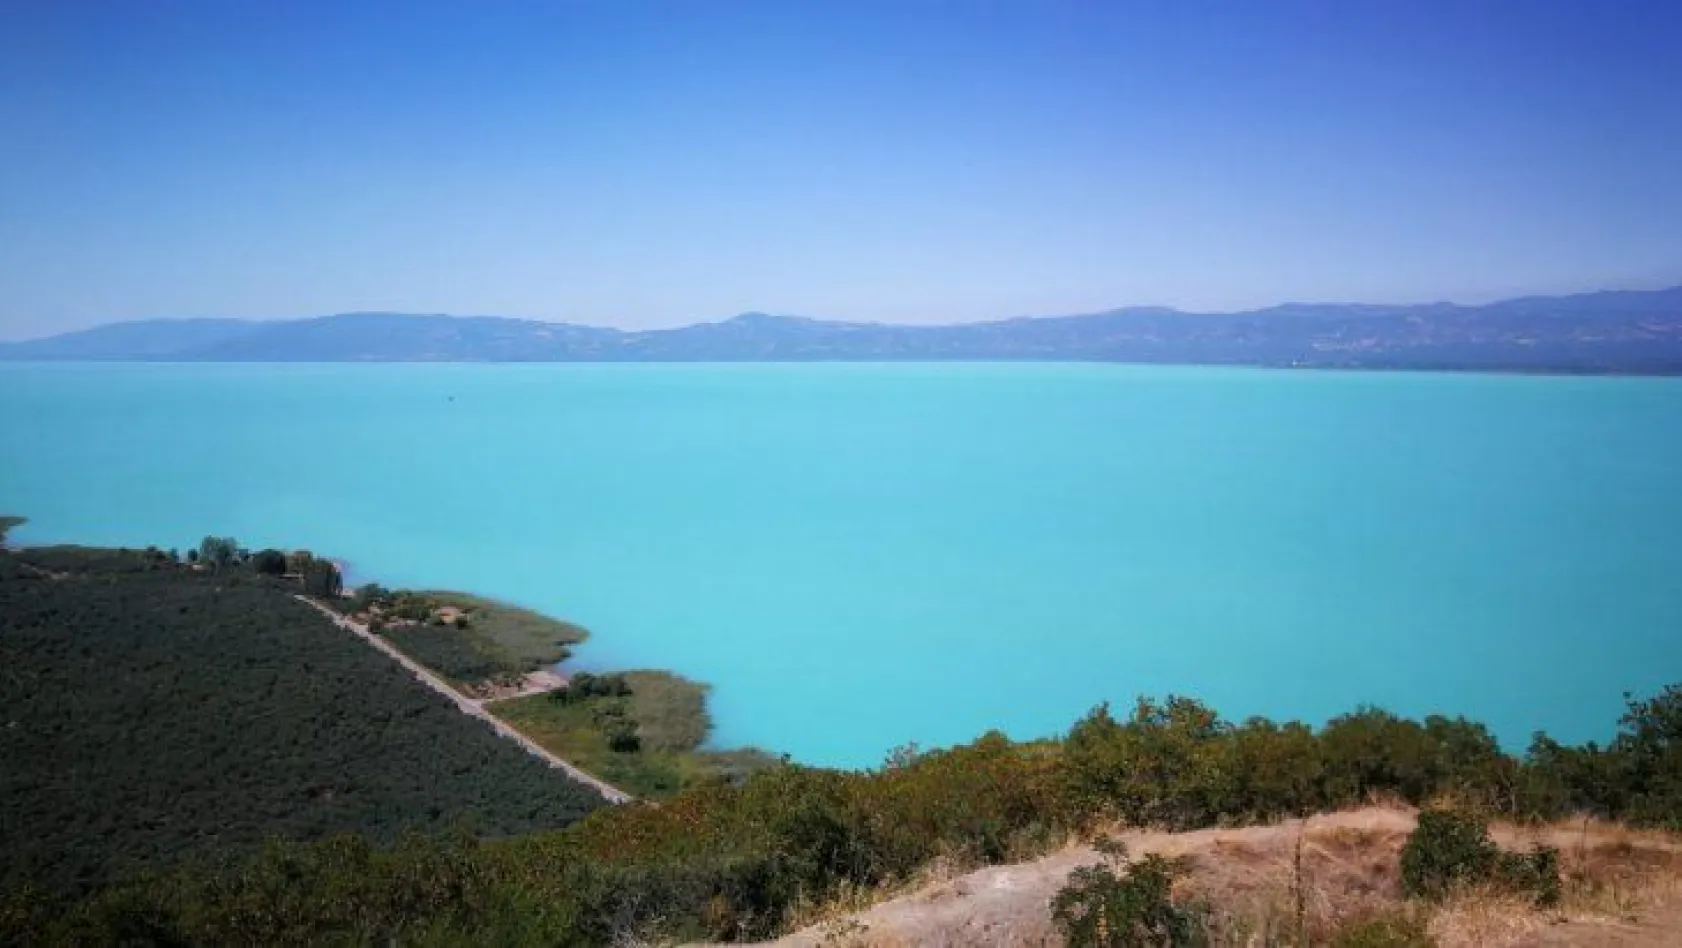 İznik Gölü turkuaz rengiyle büyüledi